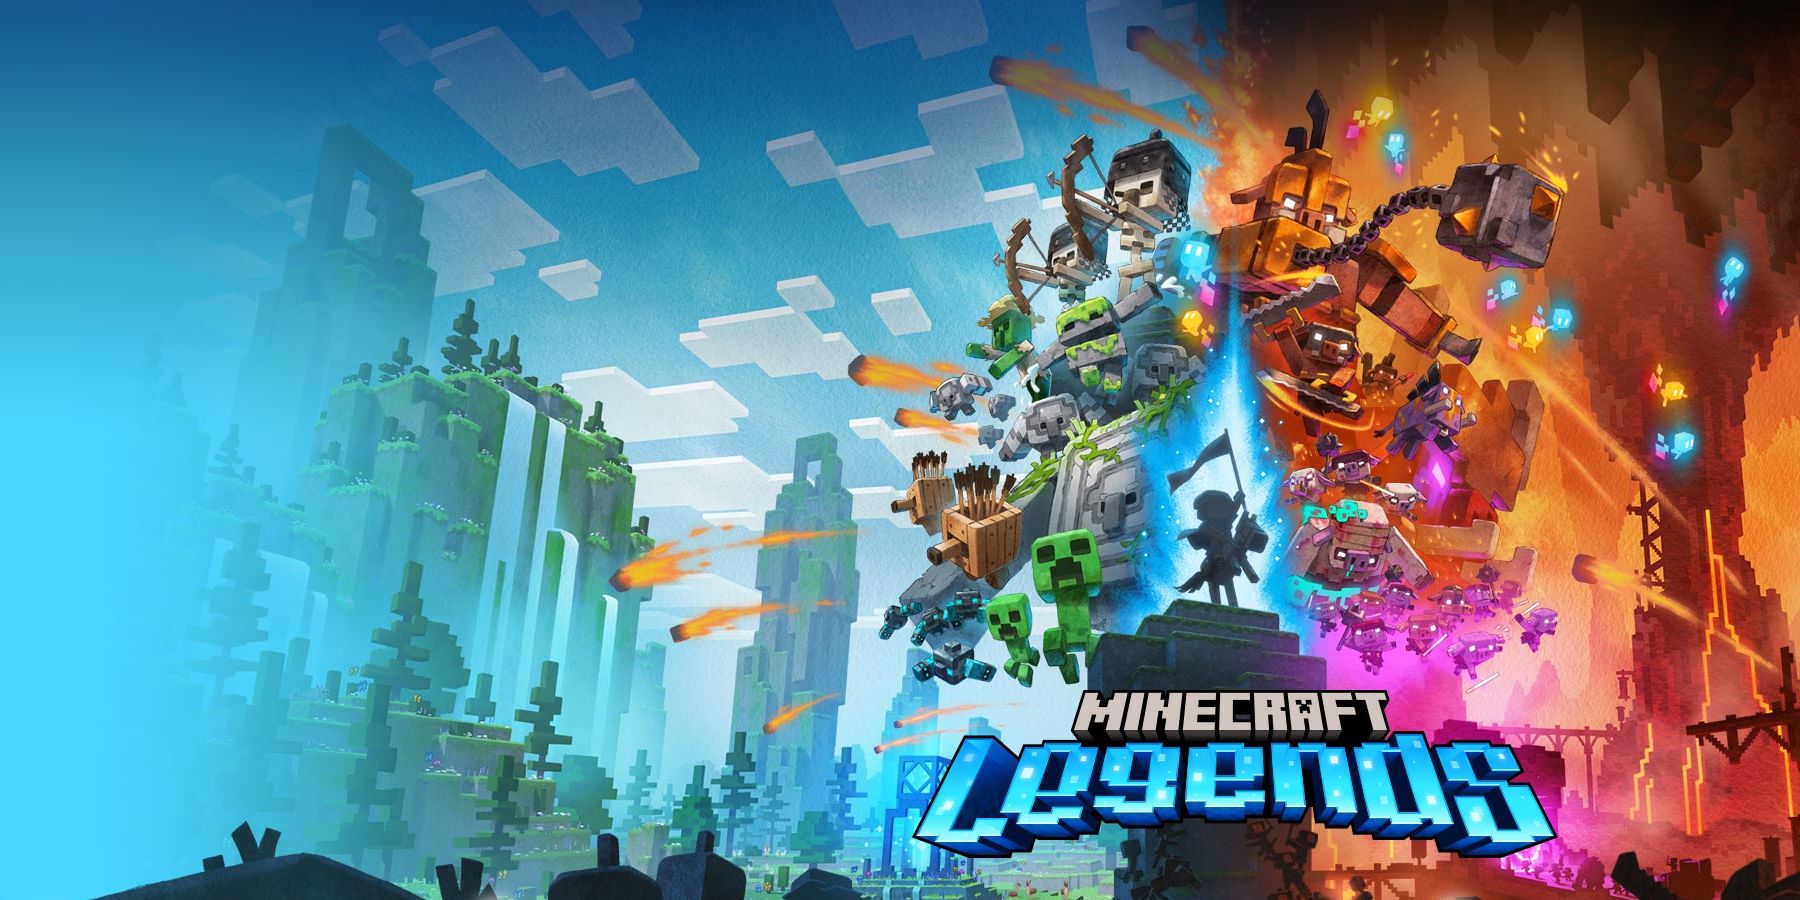 Minecraft Legends Cover Art